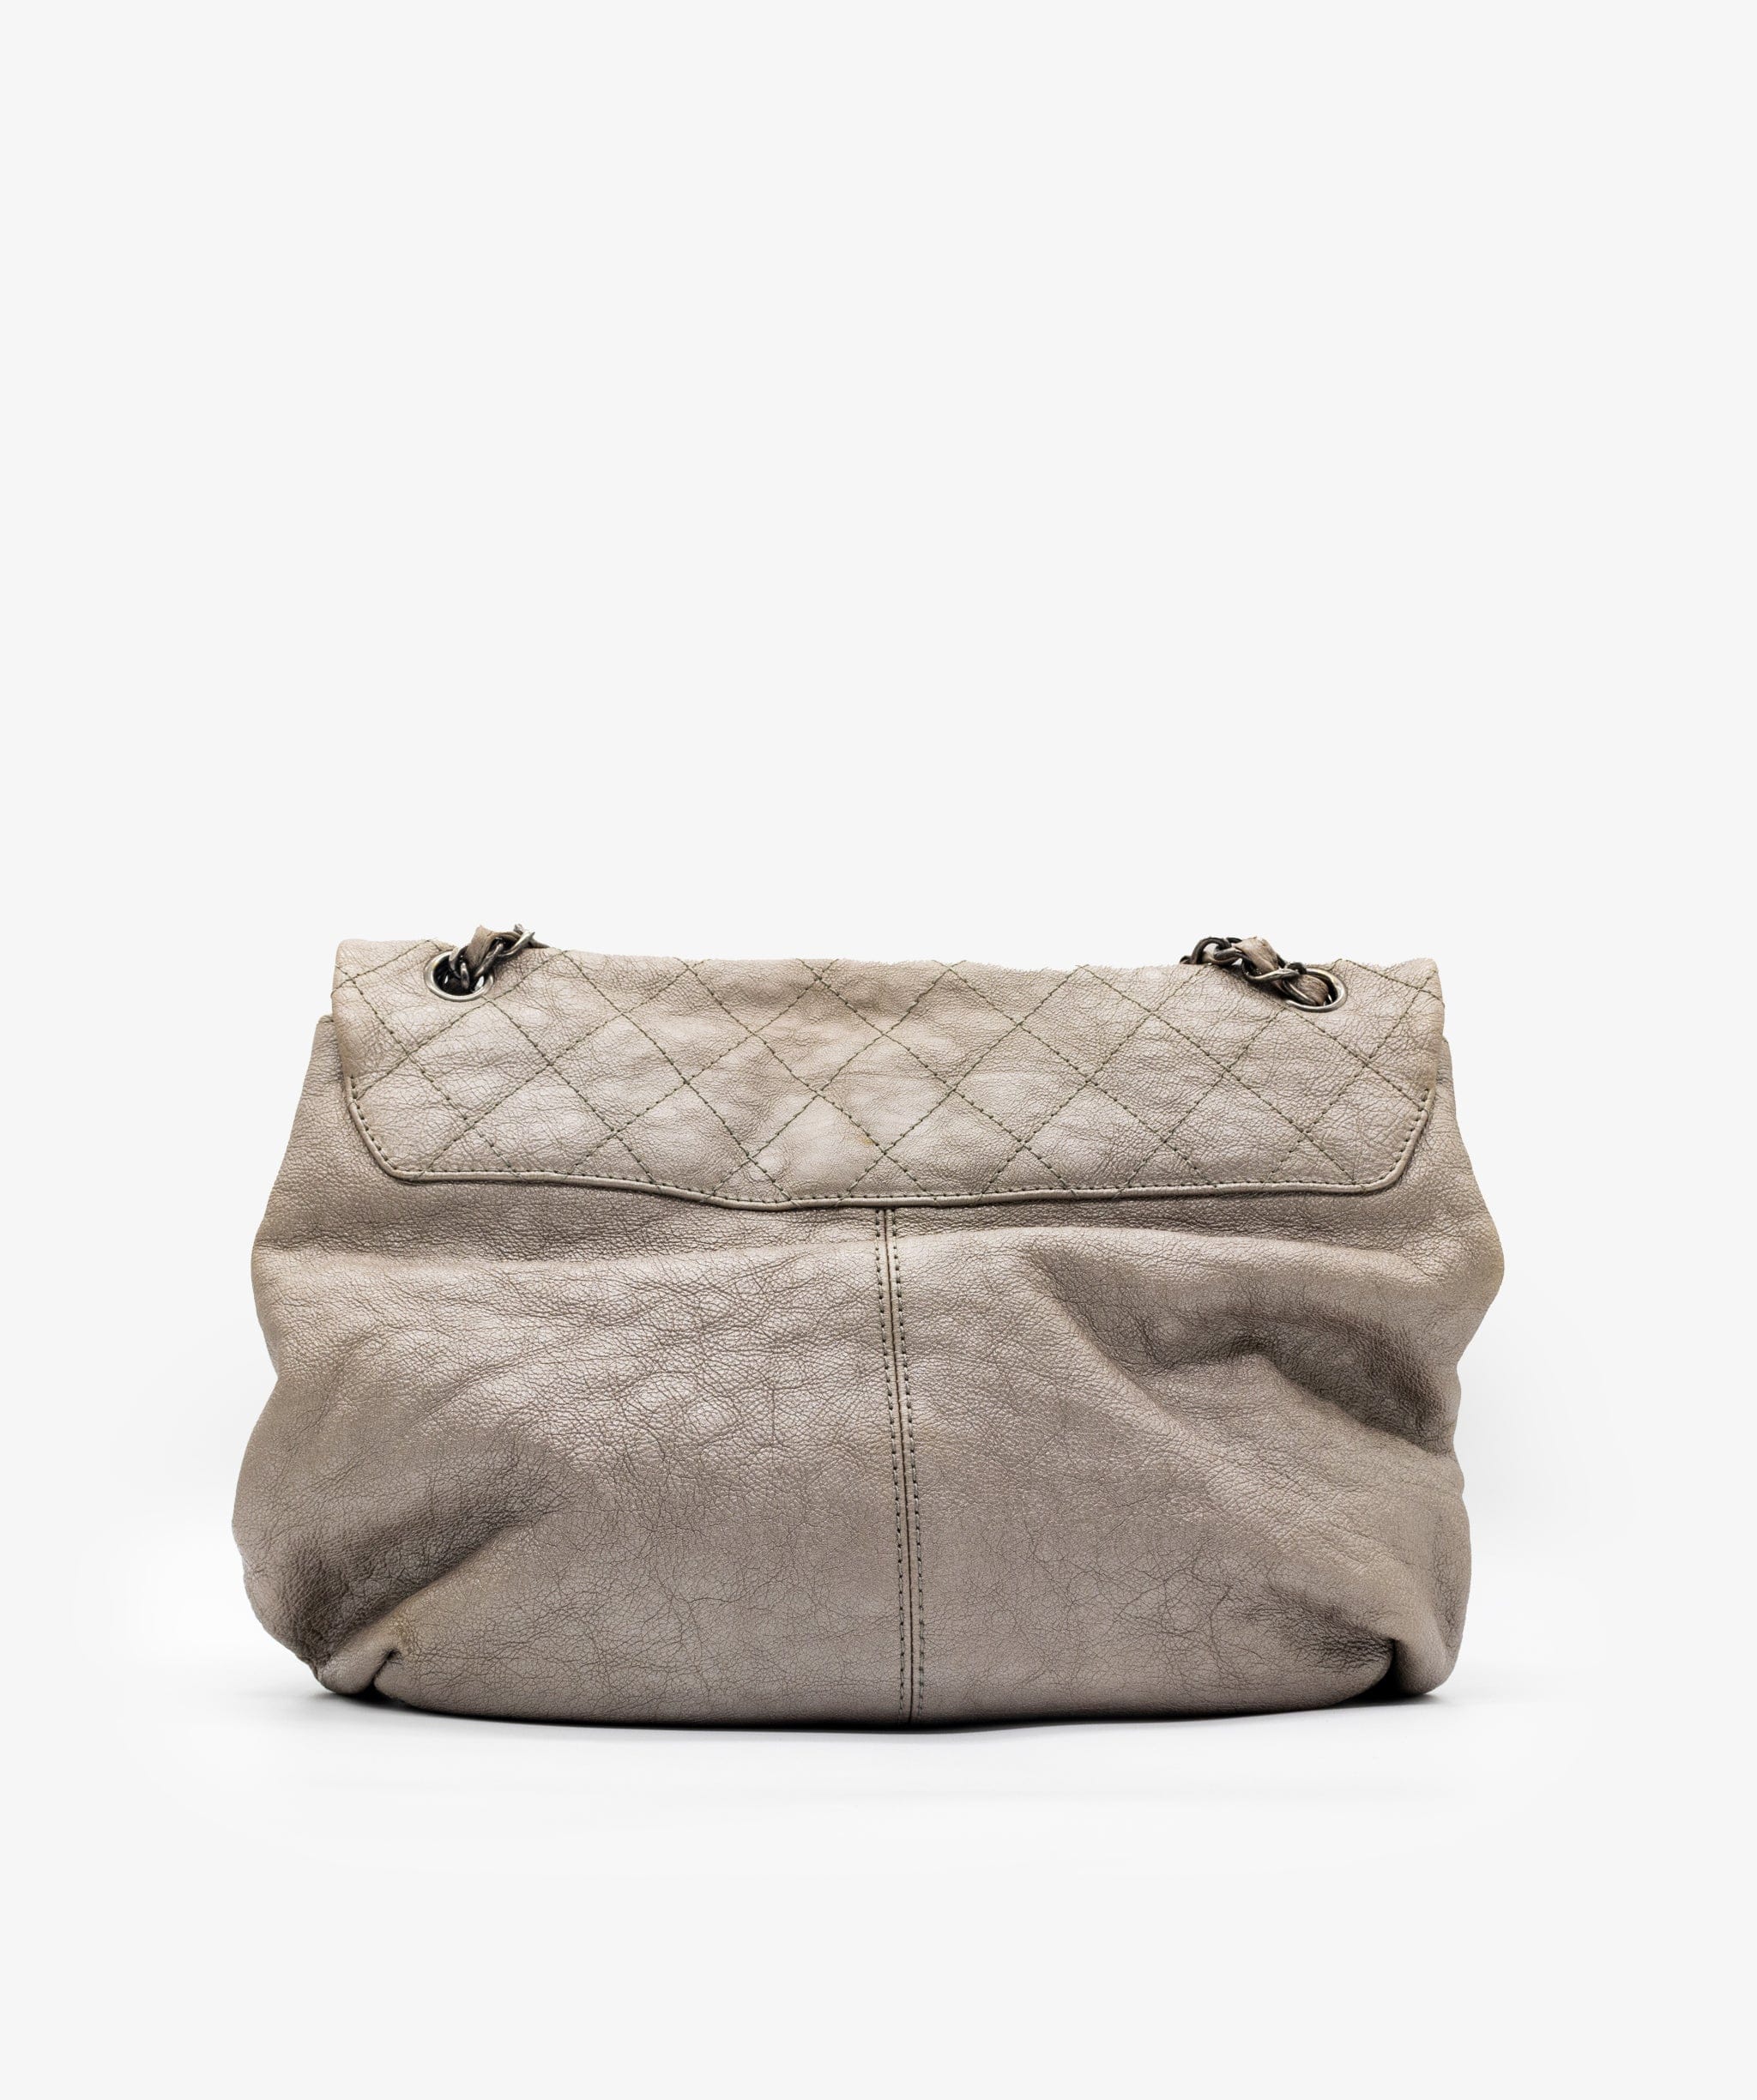 Chanel Chanel Silver Shoulder Bag